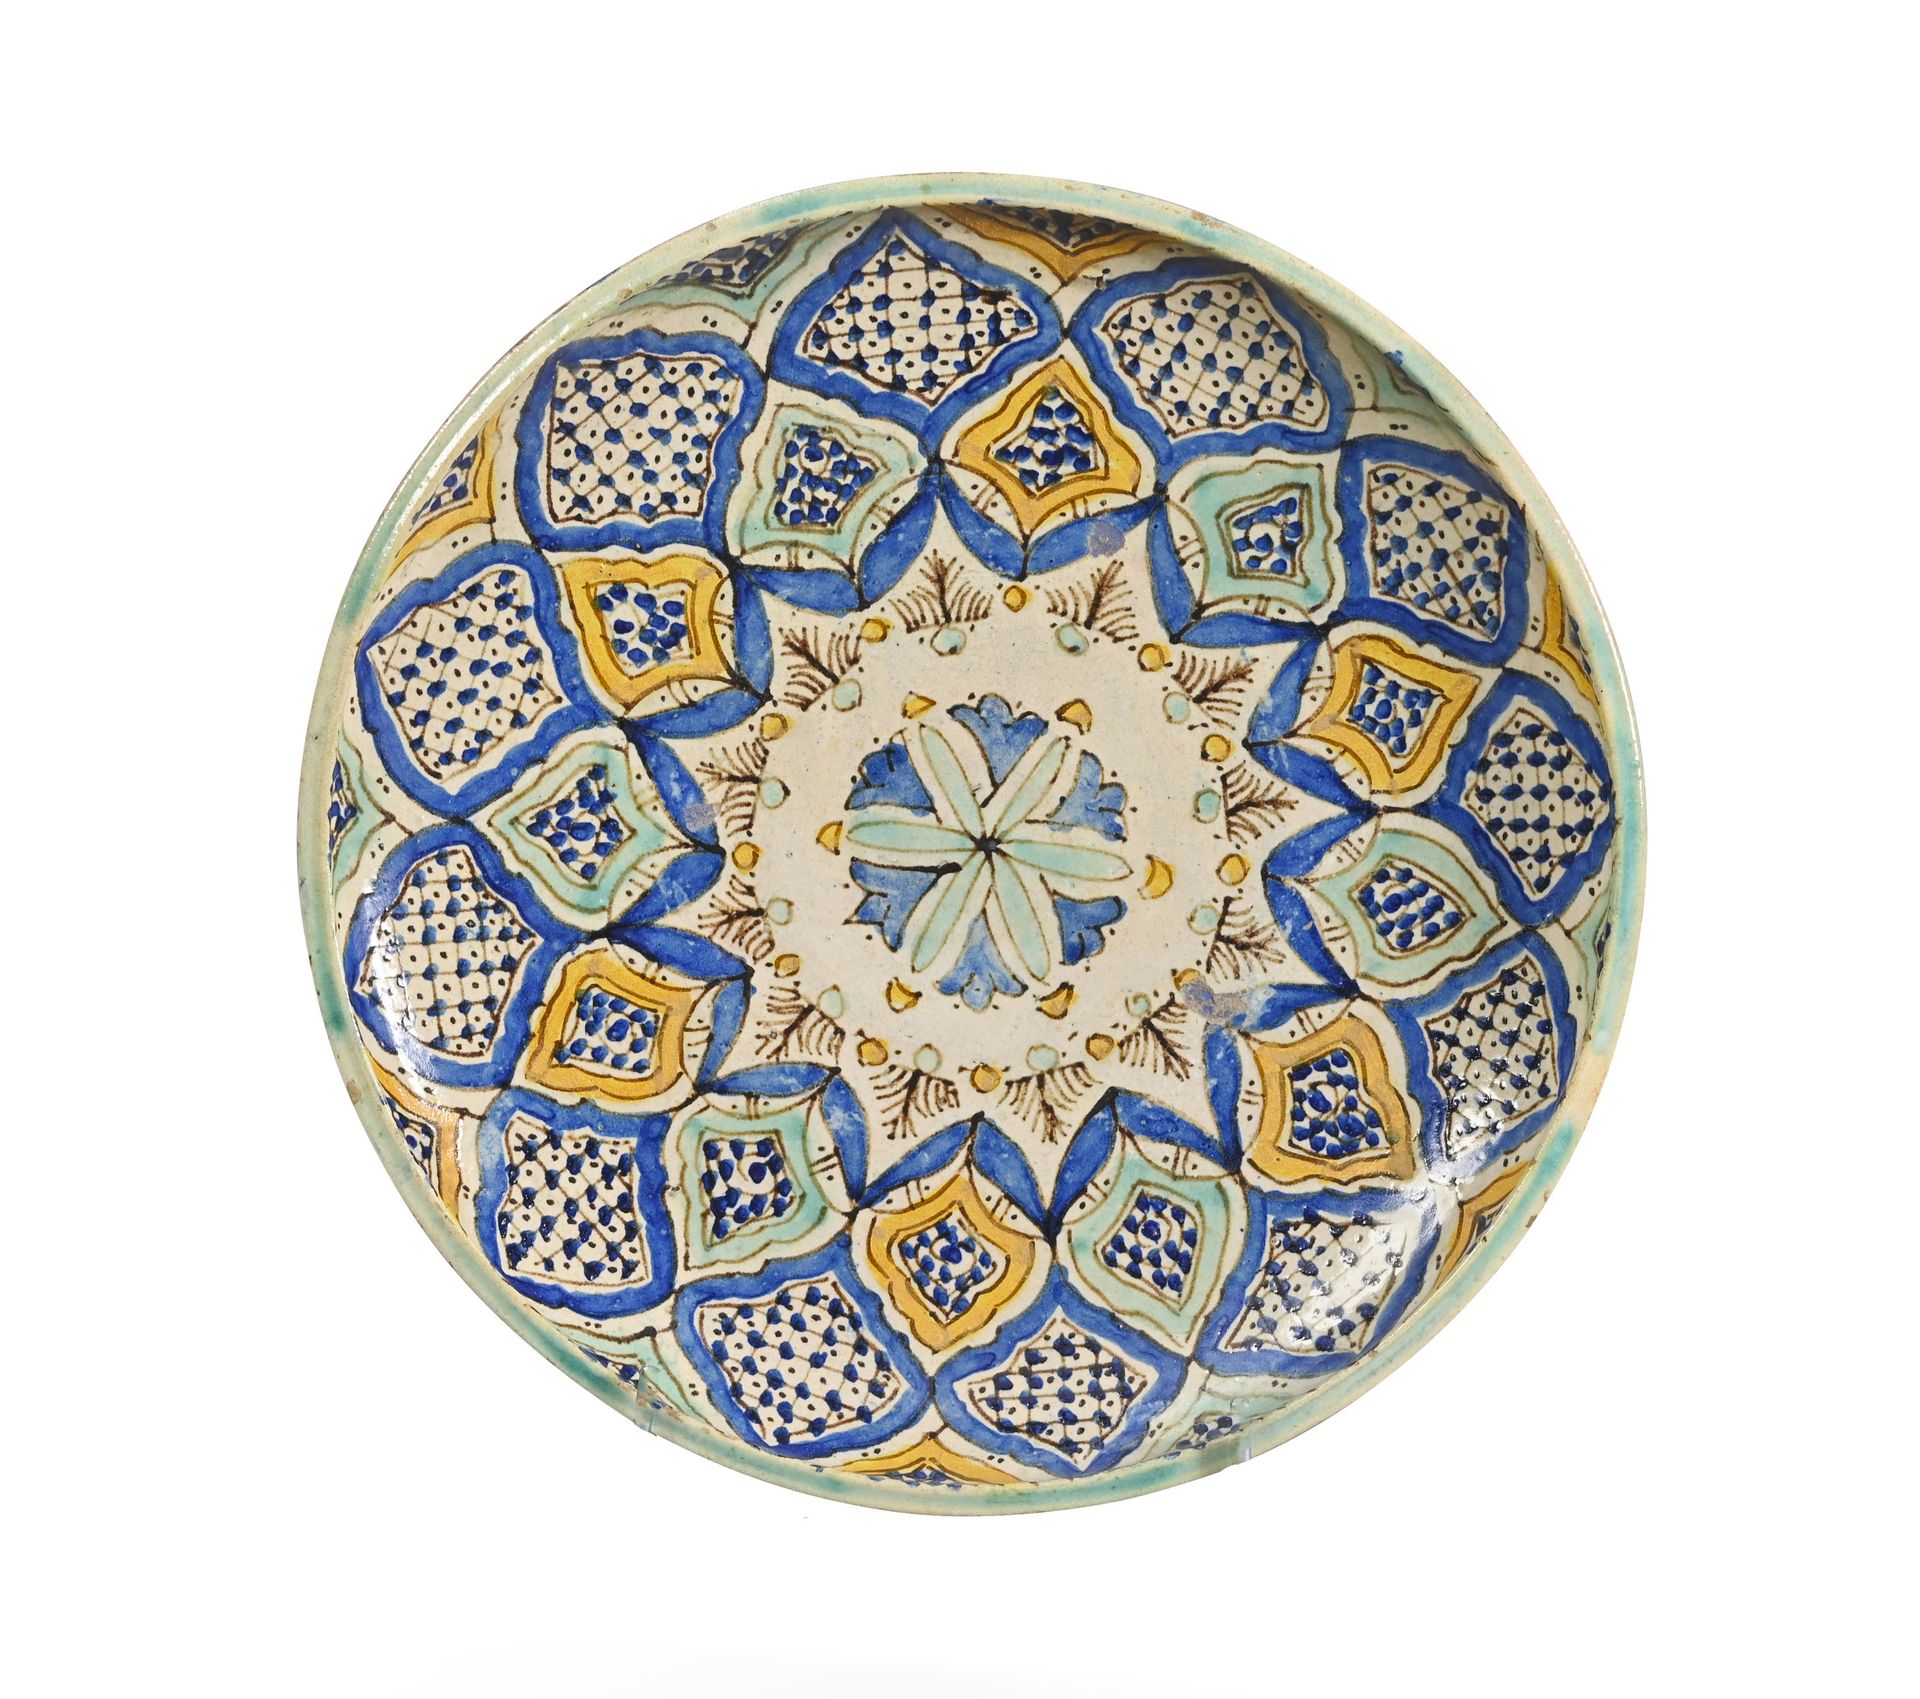 TUNISIE - XIXe / XXe siècle Lot de six céramiques Tunisiennes

Céramique à décor&hellip;